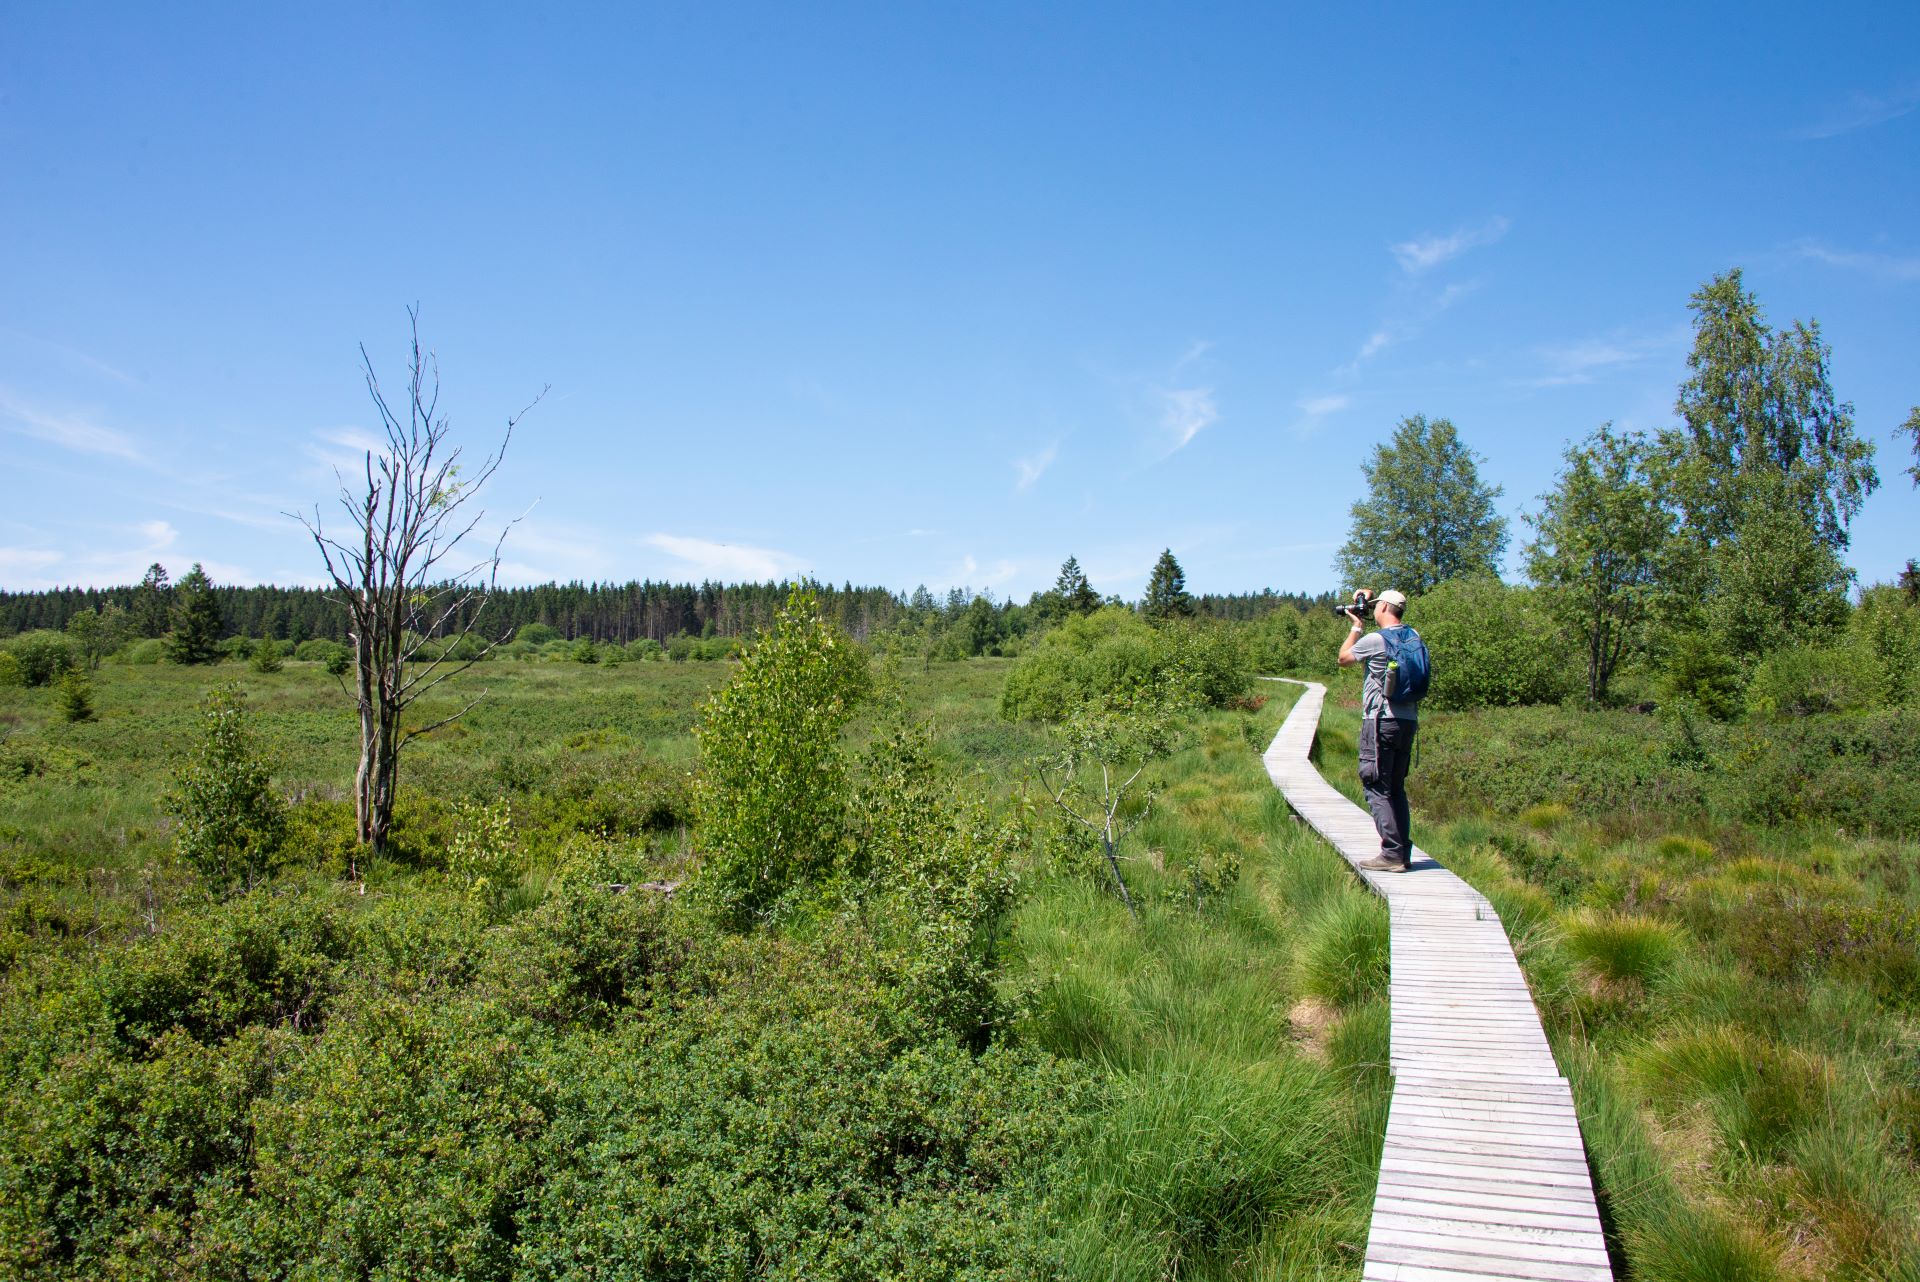 Der Reiseleiter steht auf einer Promenade, die Wanderer durch die grüne Landschaft führt. Kleine Bäume sind spärlich zu sehen.